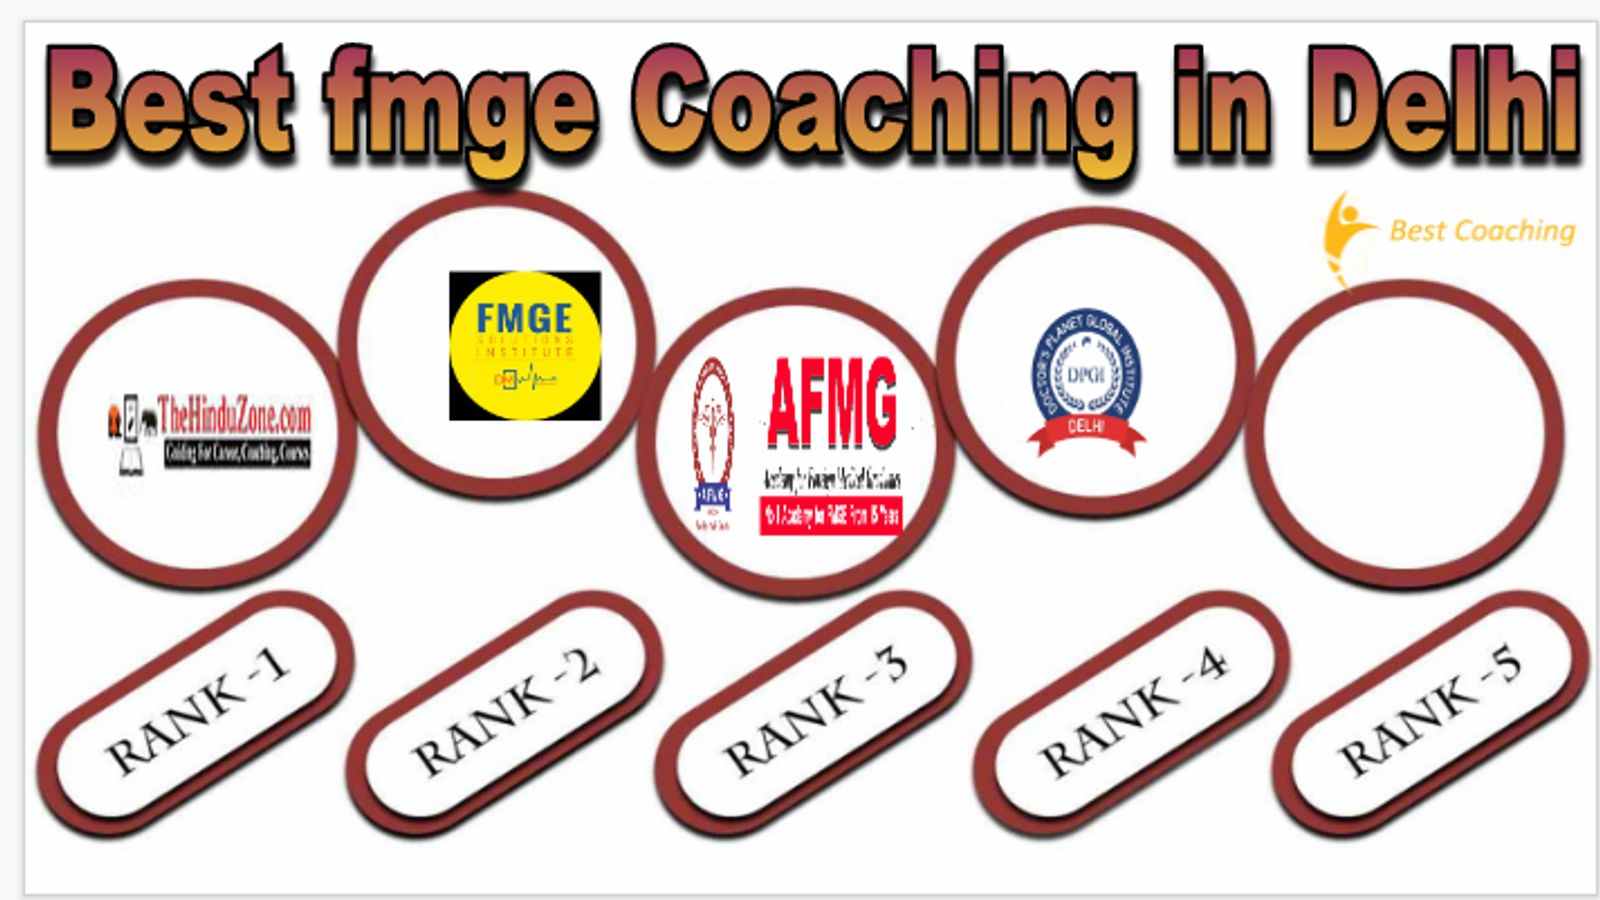 Best fmge coaching in Delhi